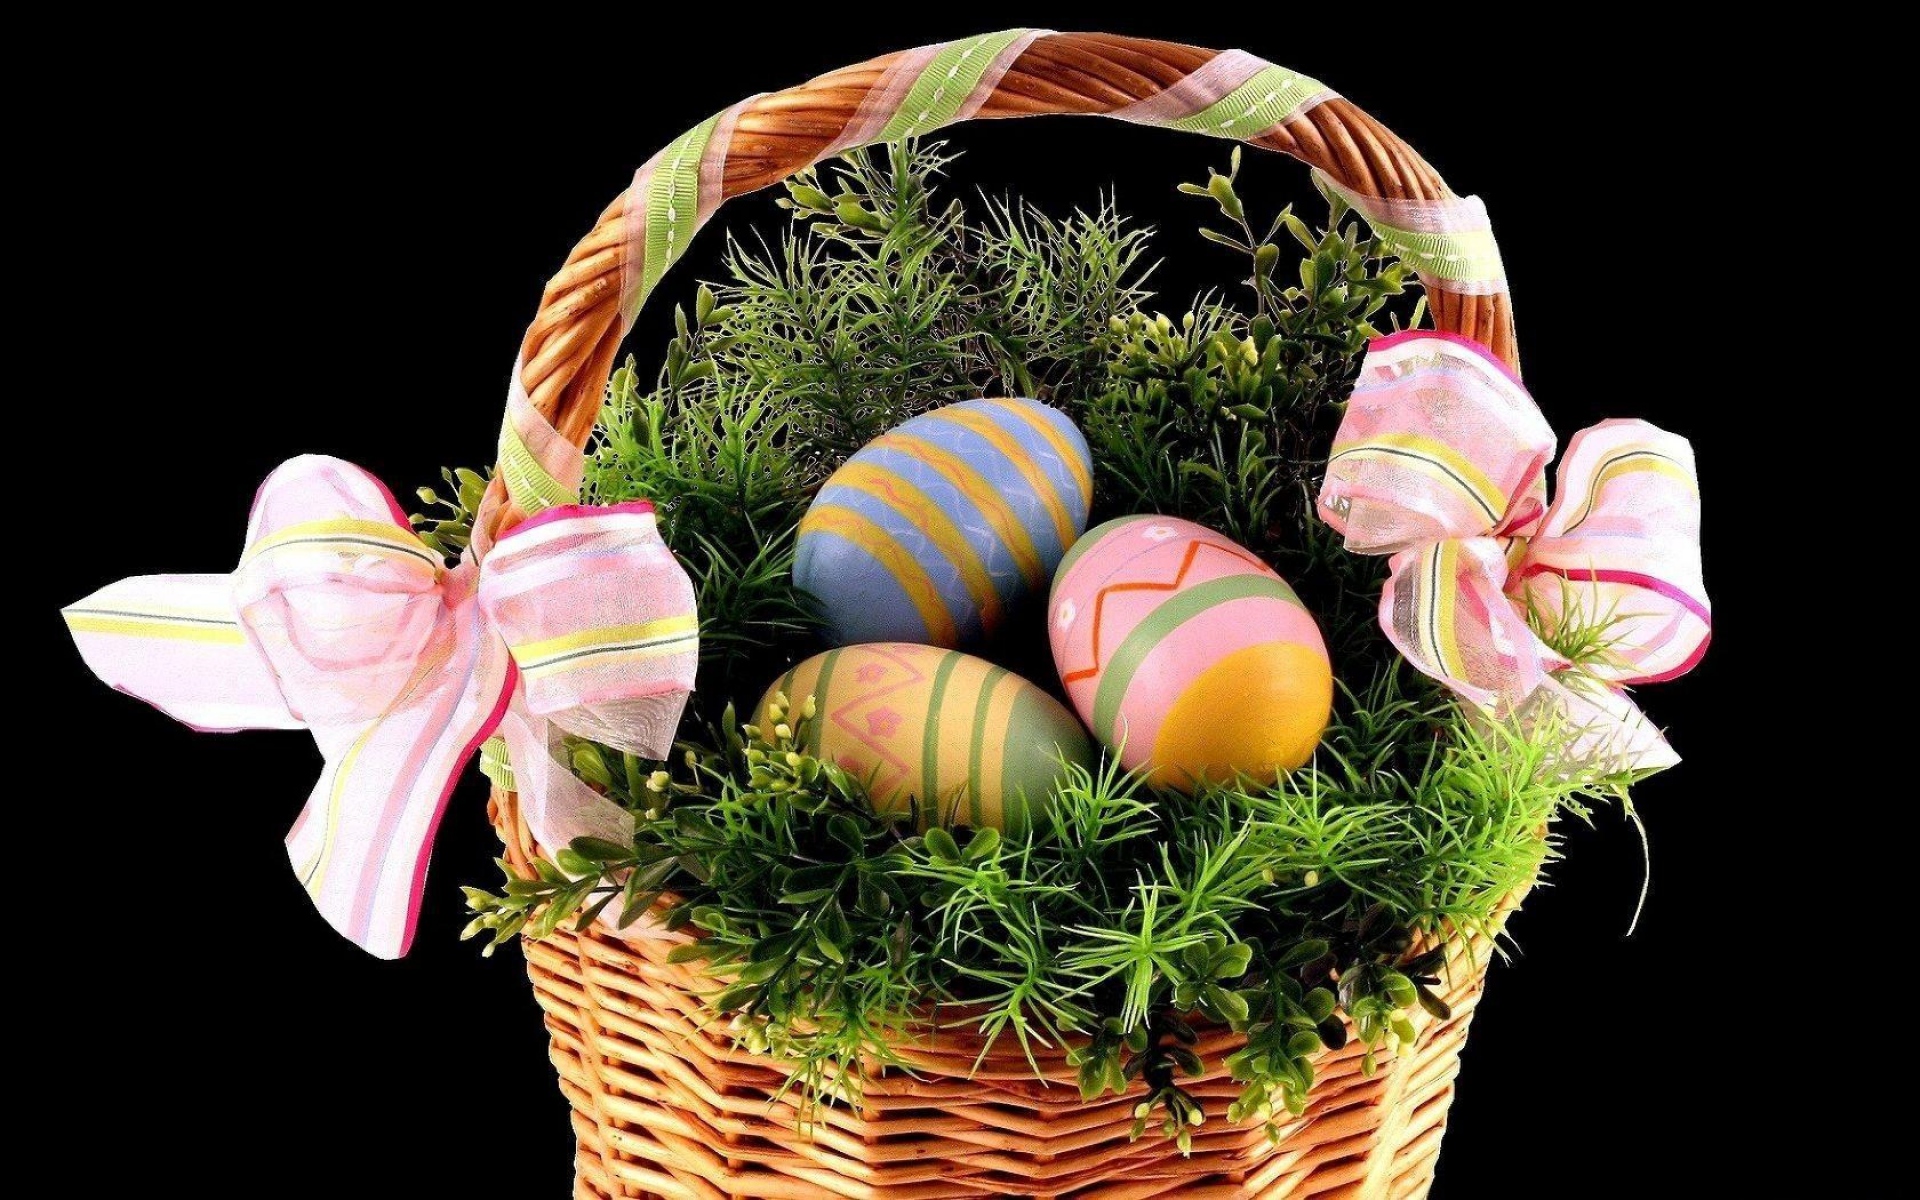 Картинки Пасха, праздник, корзина, яйца, ленты, зелень, черный фон фото и обои на рабочий стол